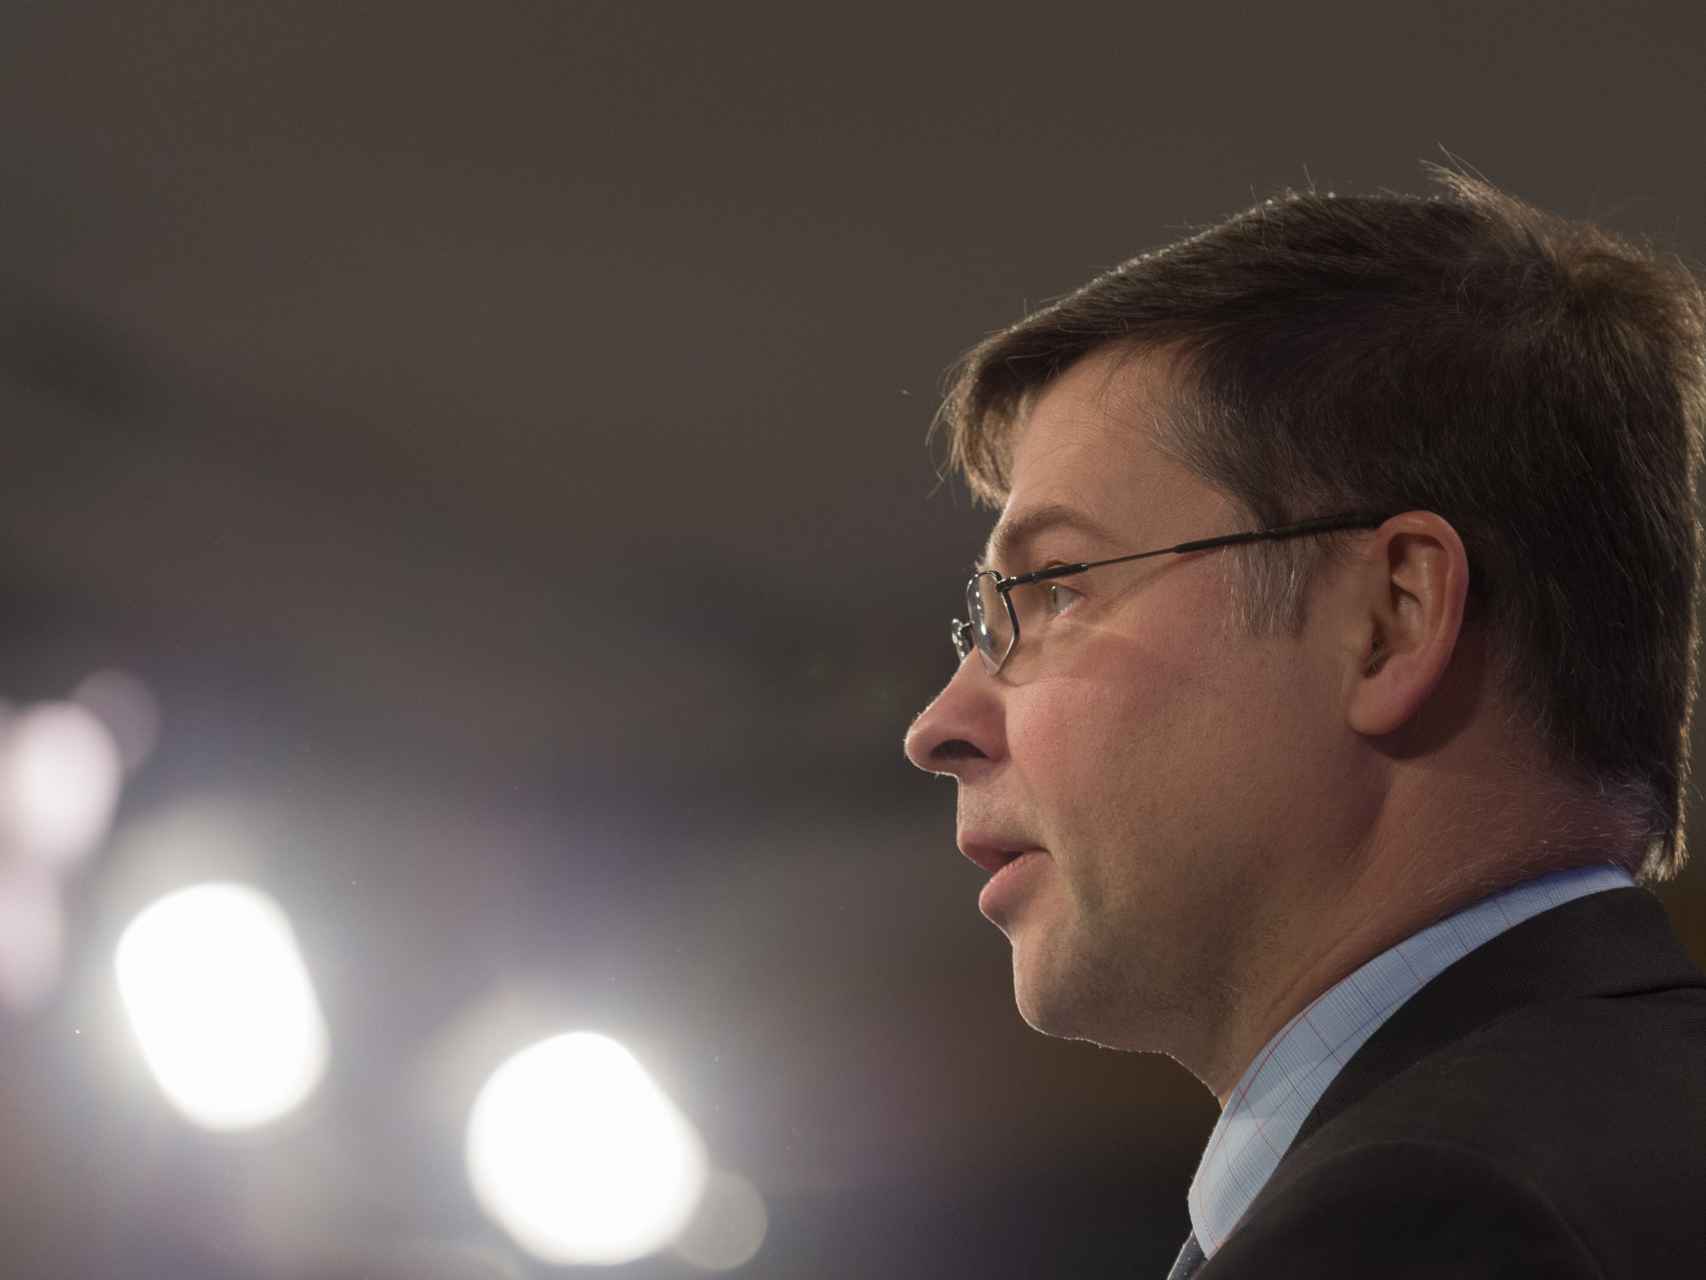 El vicepresidente económico de la Comisión, Valdis Dombrovskis